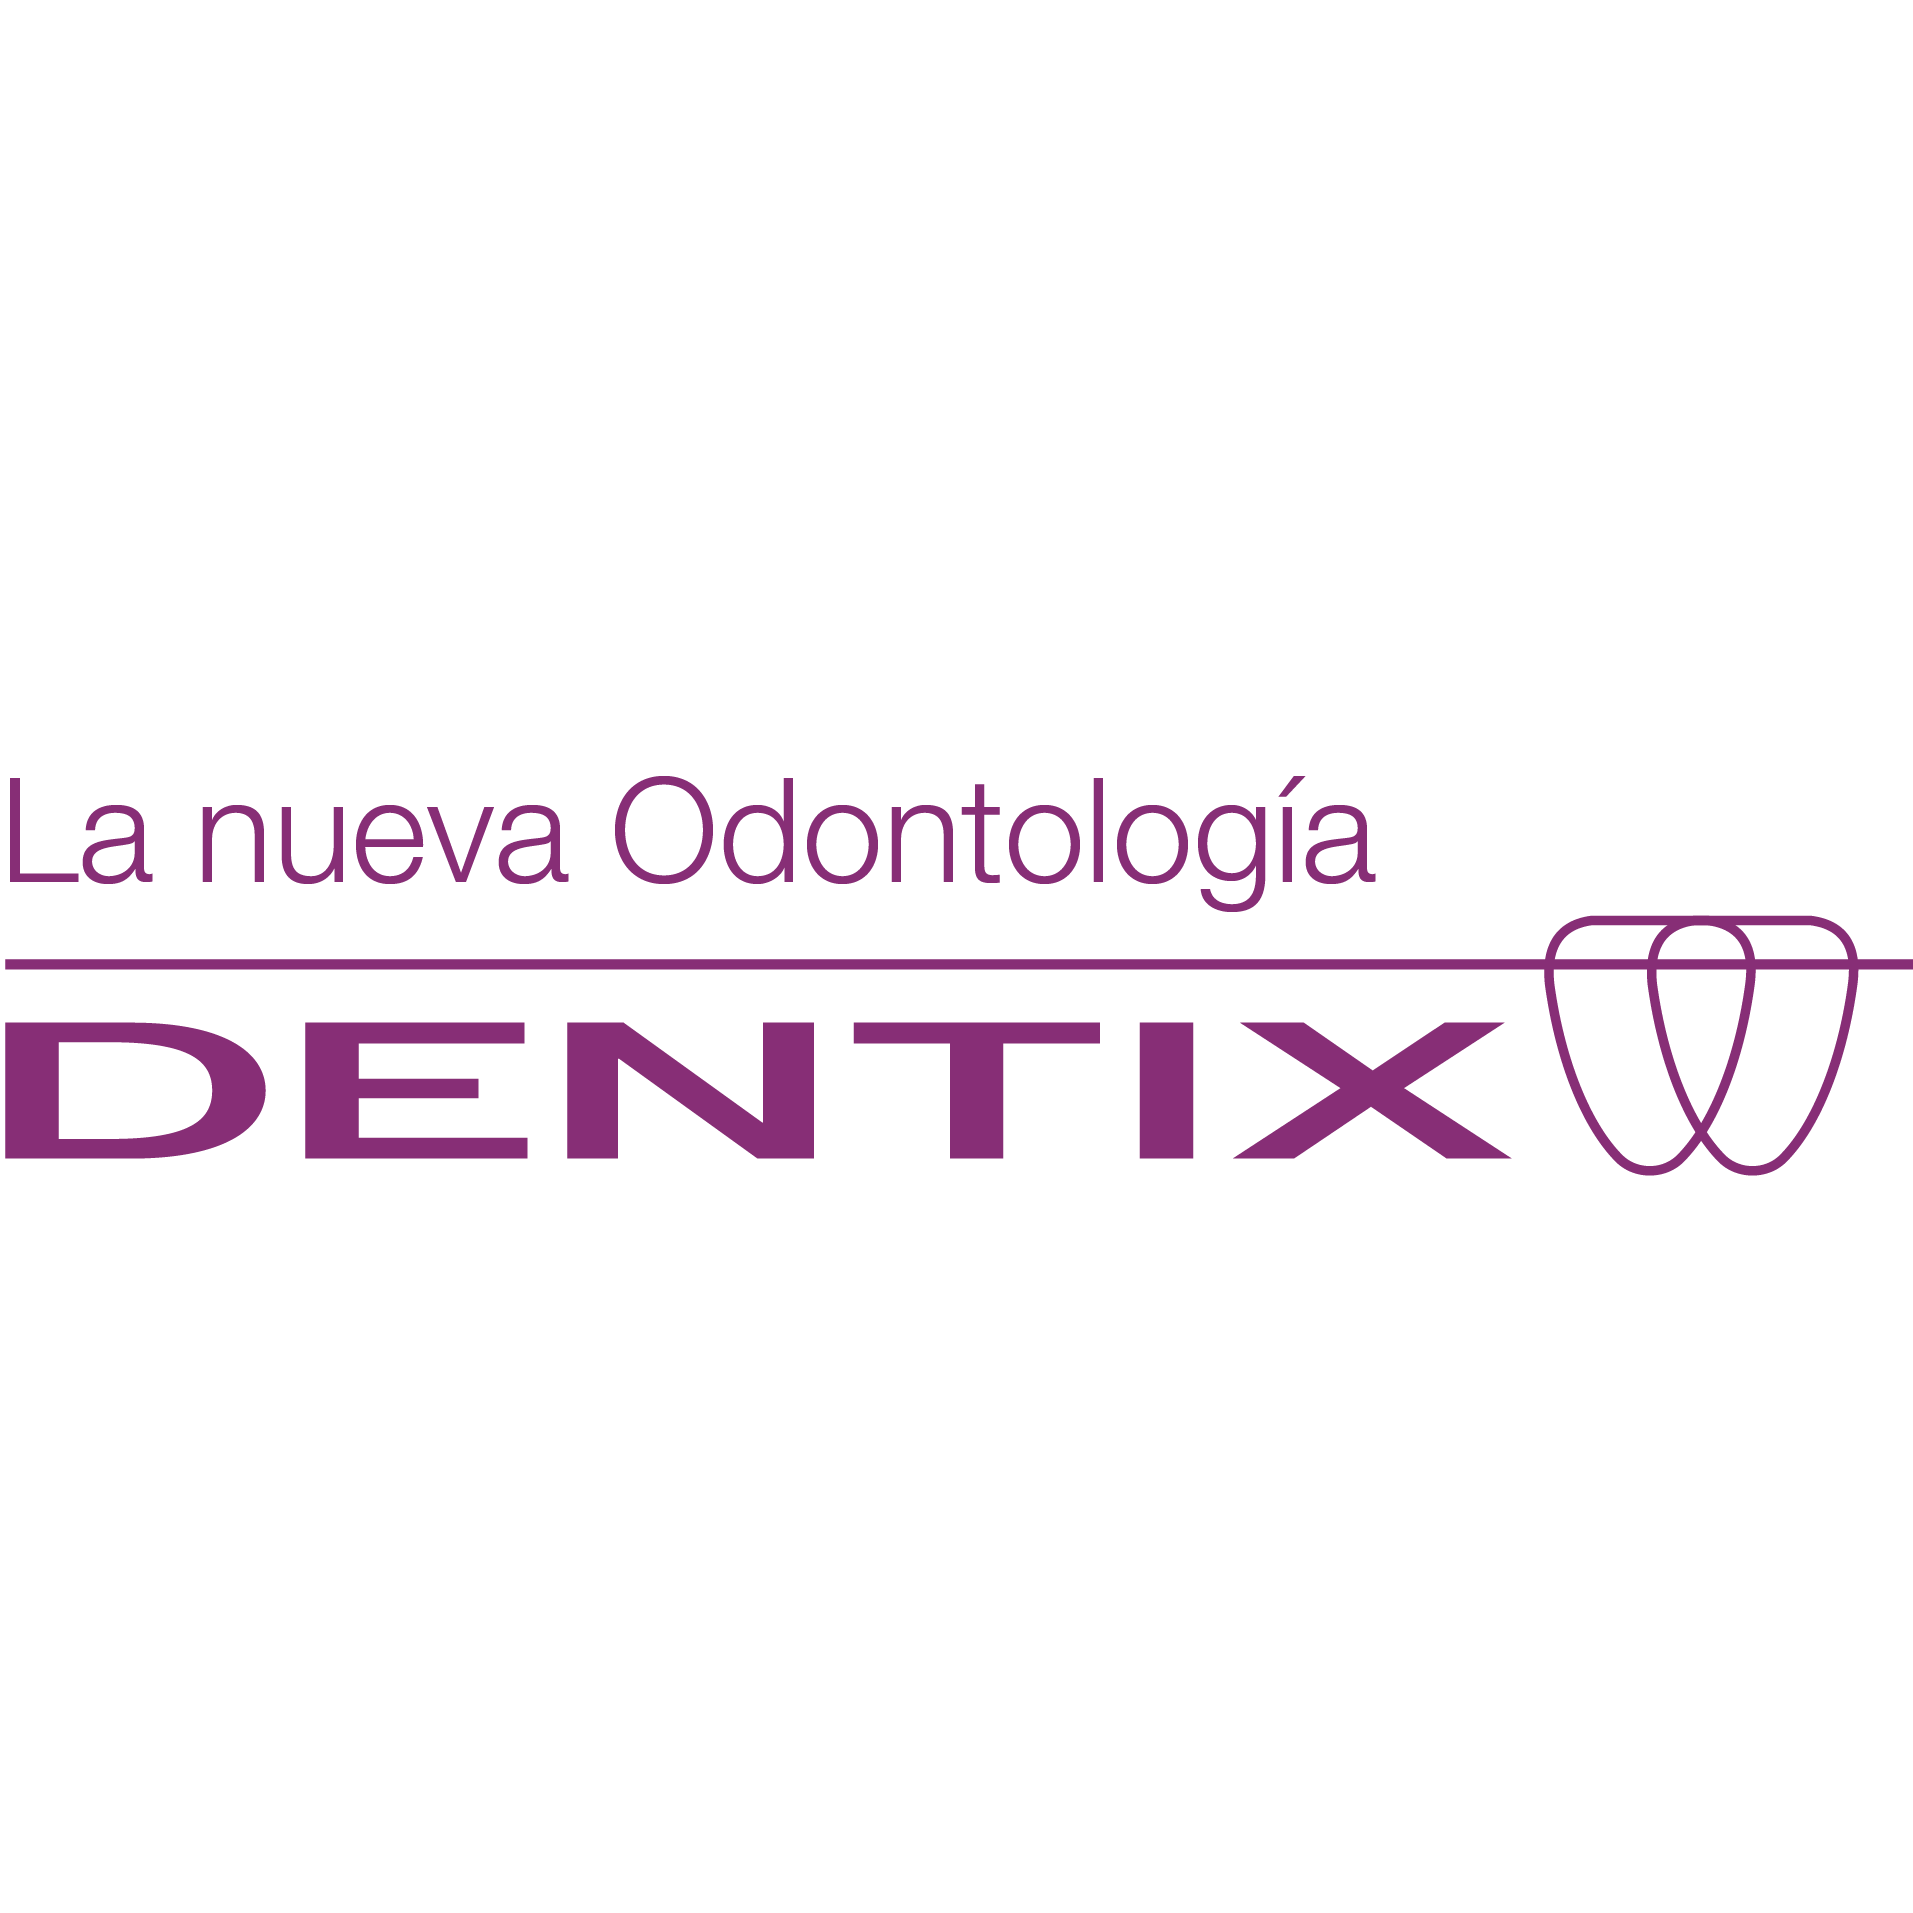 Dentix Cra. 14 Armenia - Dentist - Armenia - (601) 3902547 Colombia | ShowMeLocal.com